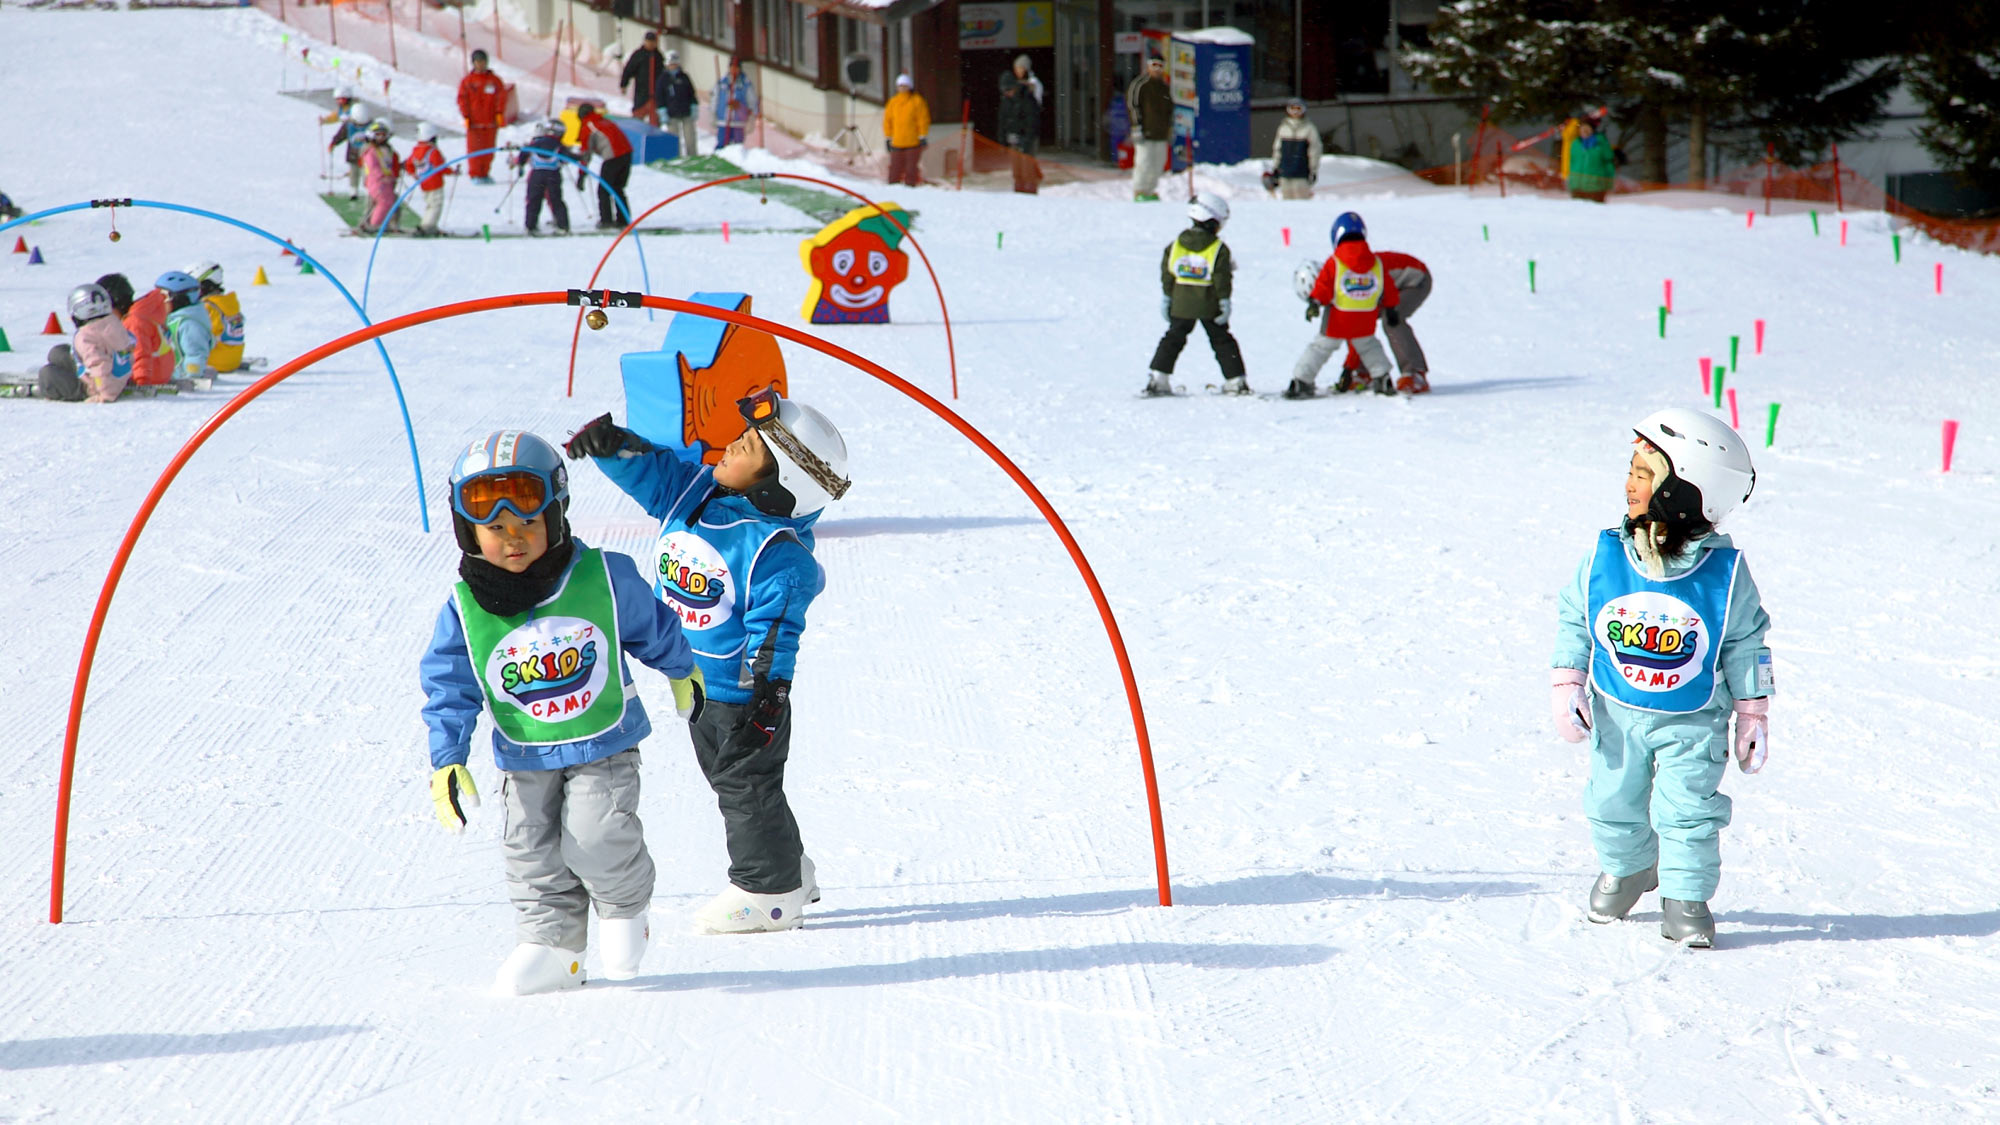 【スキッズ・キャンプ】パノラマスキー場で開催している、3歳から小学生までを対象としたスキーレッスン。